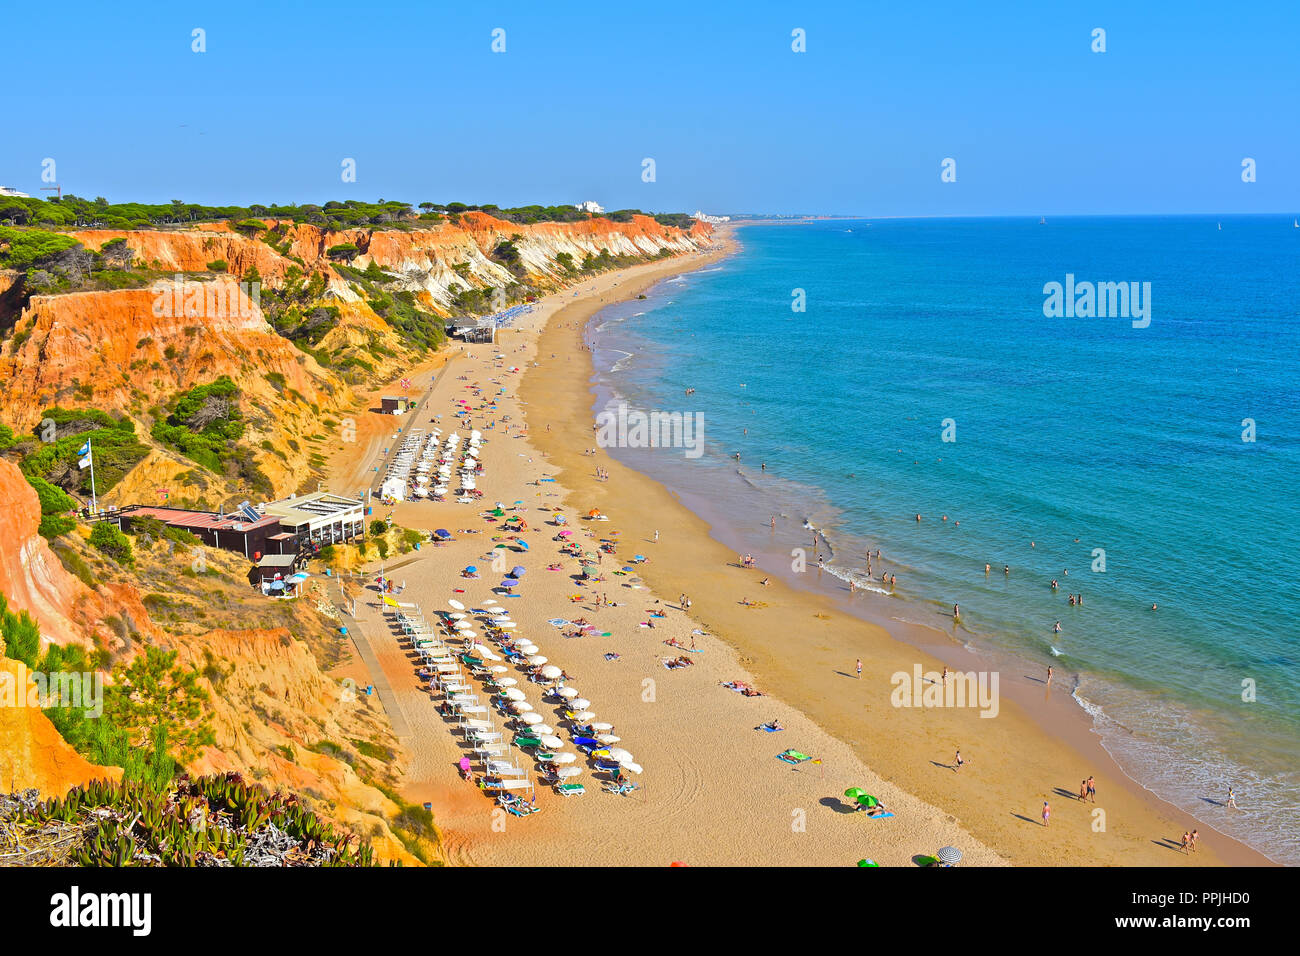 La merveilleuse plage de sable doré de Praia de Falésia s'étend de six kilomètres de Vilamoura à Olhos d'Agua, dans la région de l'Algarve du Portugal. Banque D'Images